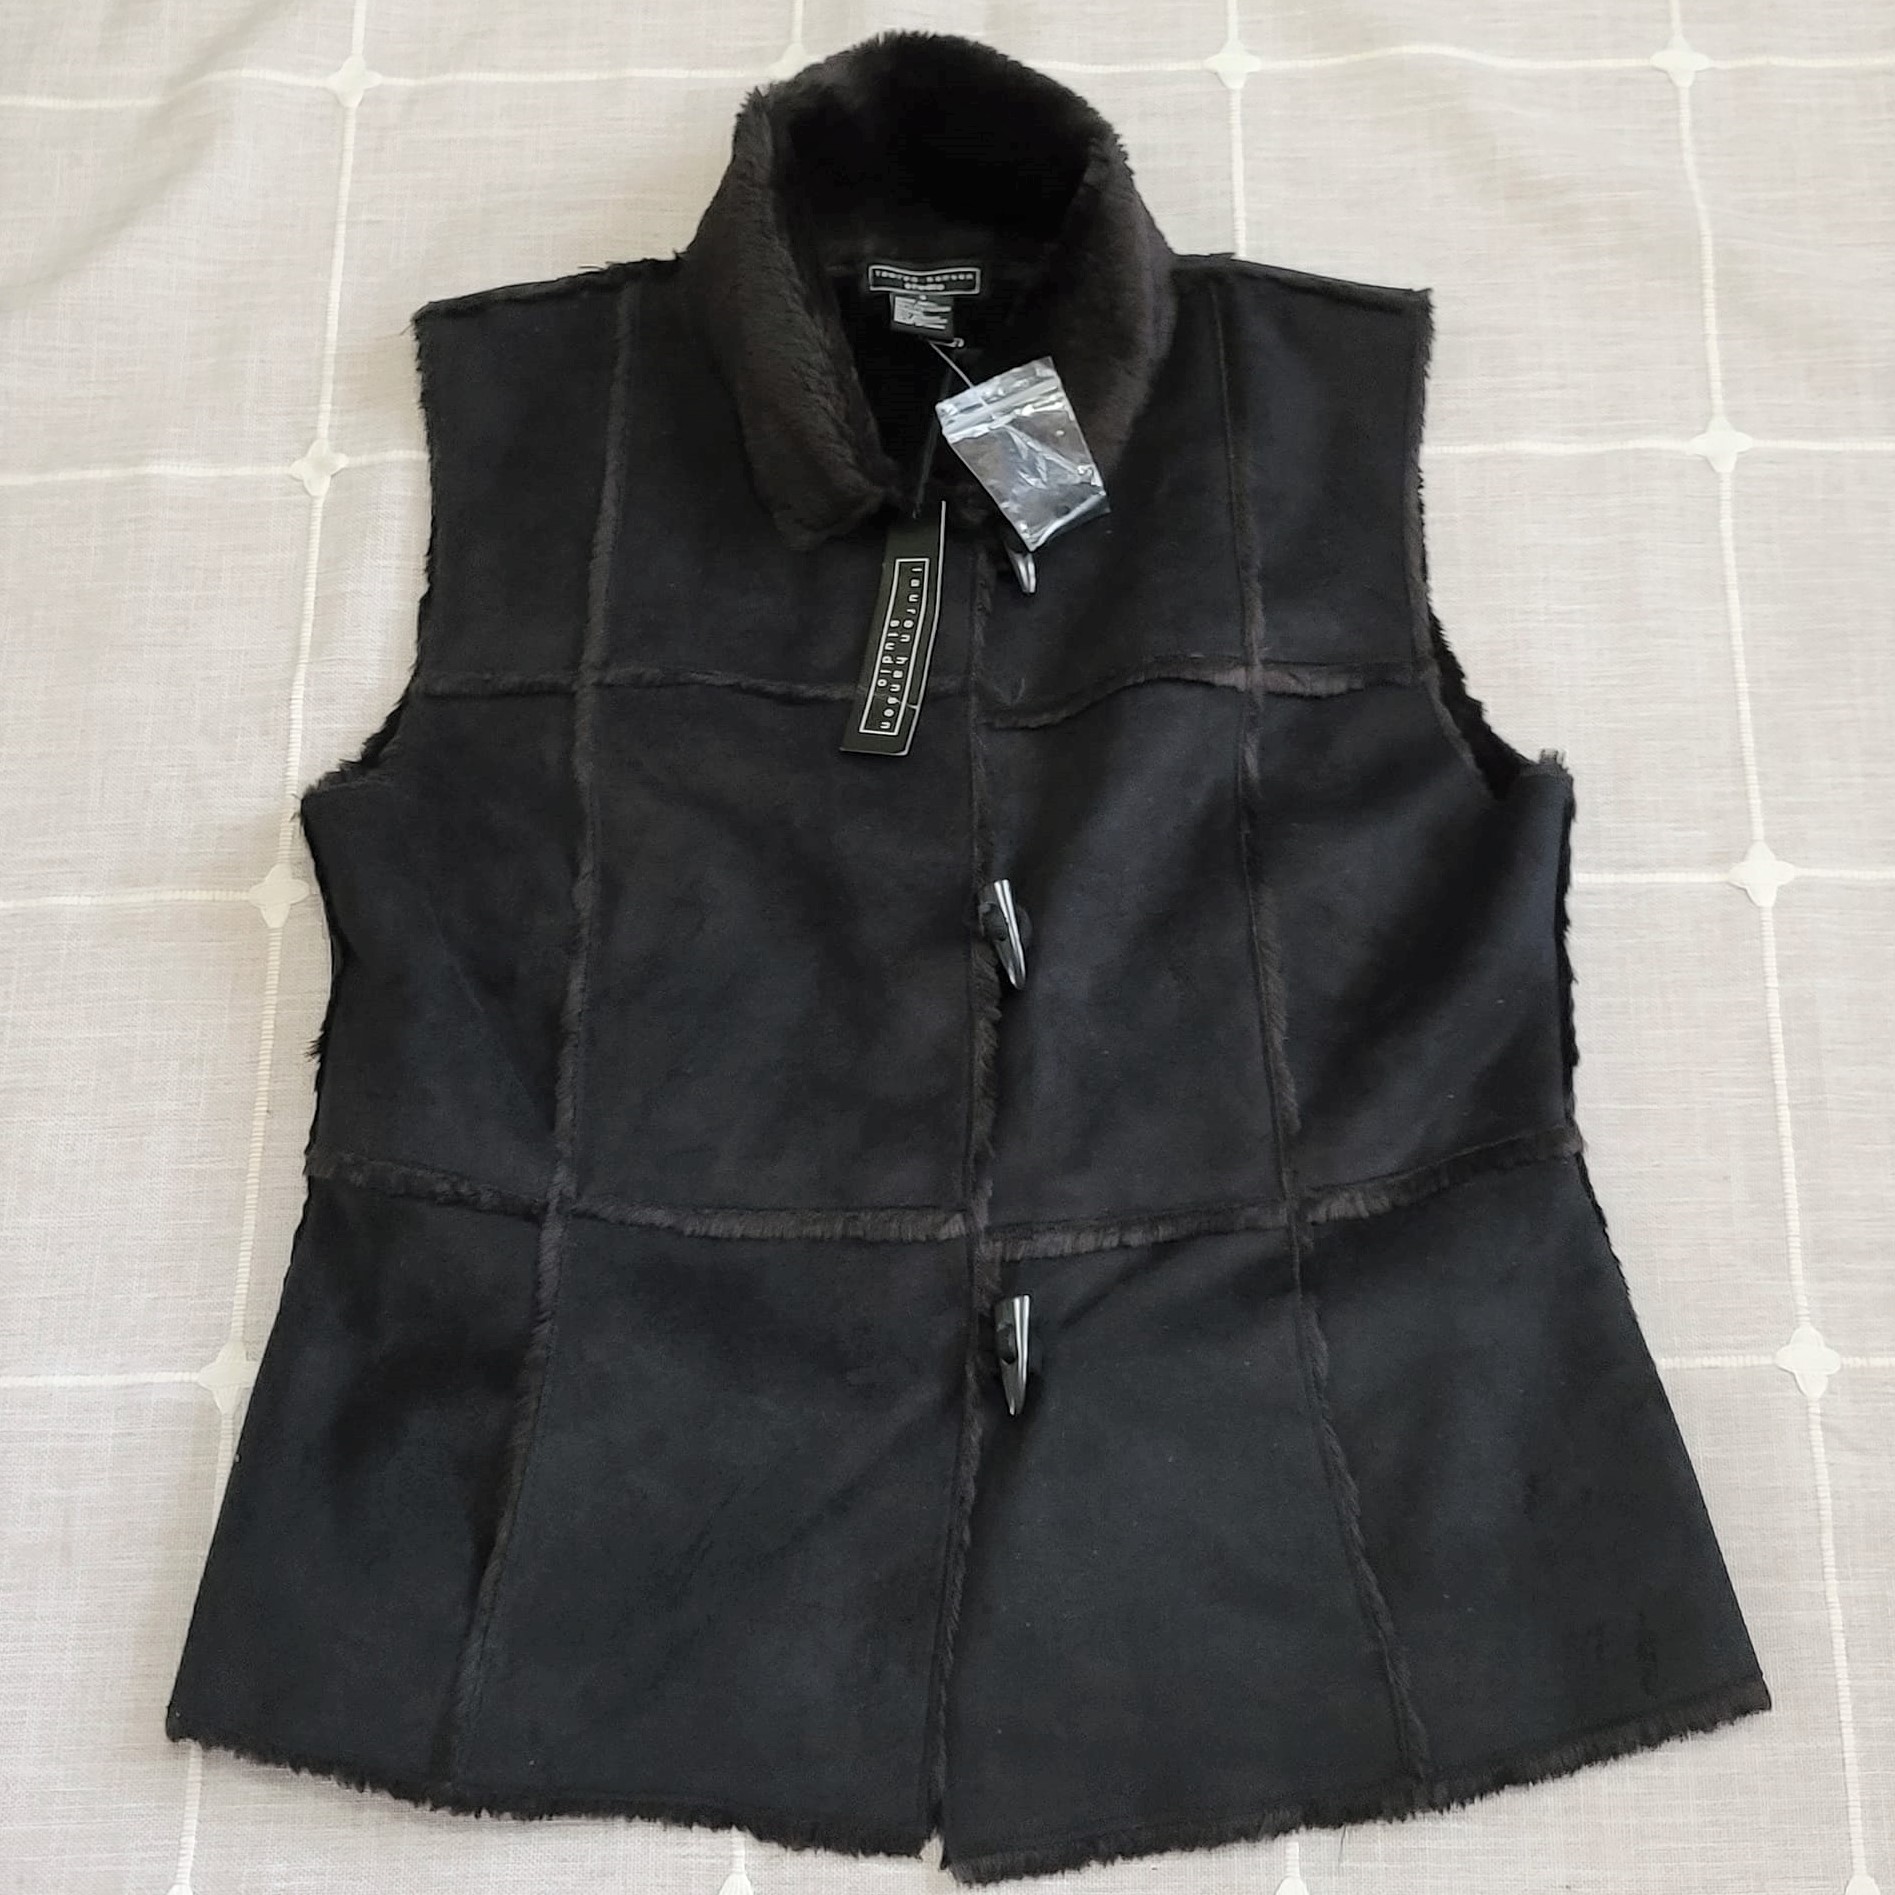 Lauren Hansen Studio Black Faux Fur Vest NWT - Click Image to Close